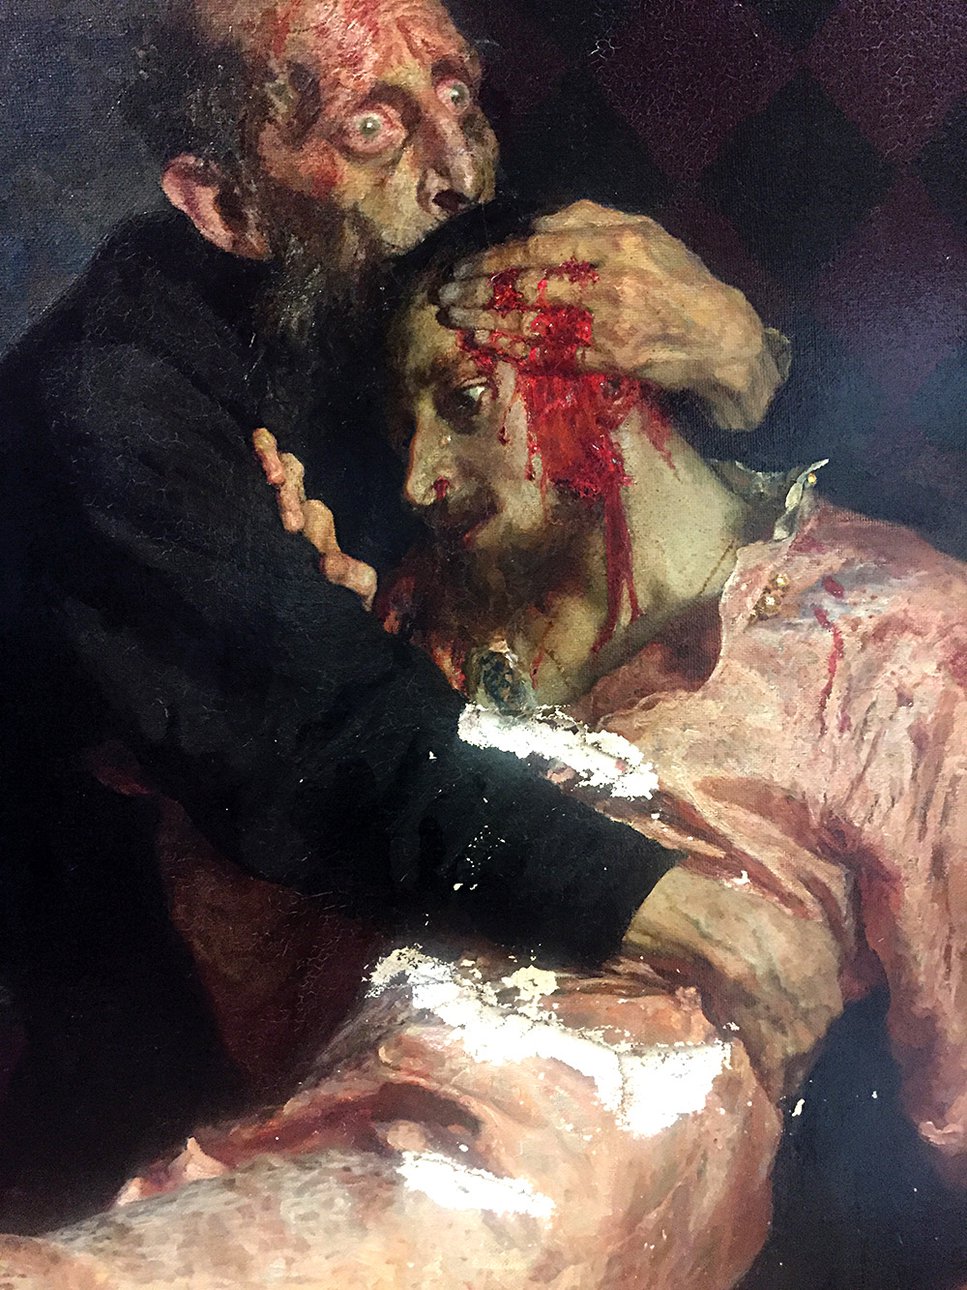 Картина Ильи Репина «Иван Грозный и сын его Иван 16 ноября 1581 года» после нападения посетителя 25 мая 2018 г. Фото: Государственная Третьяковская галерея